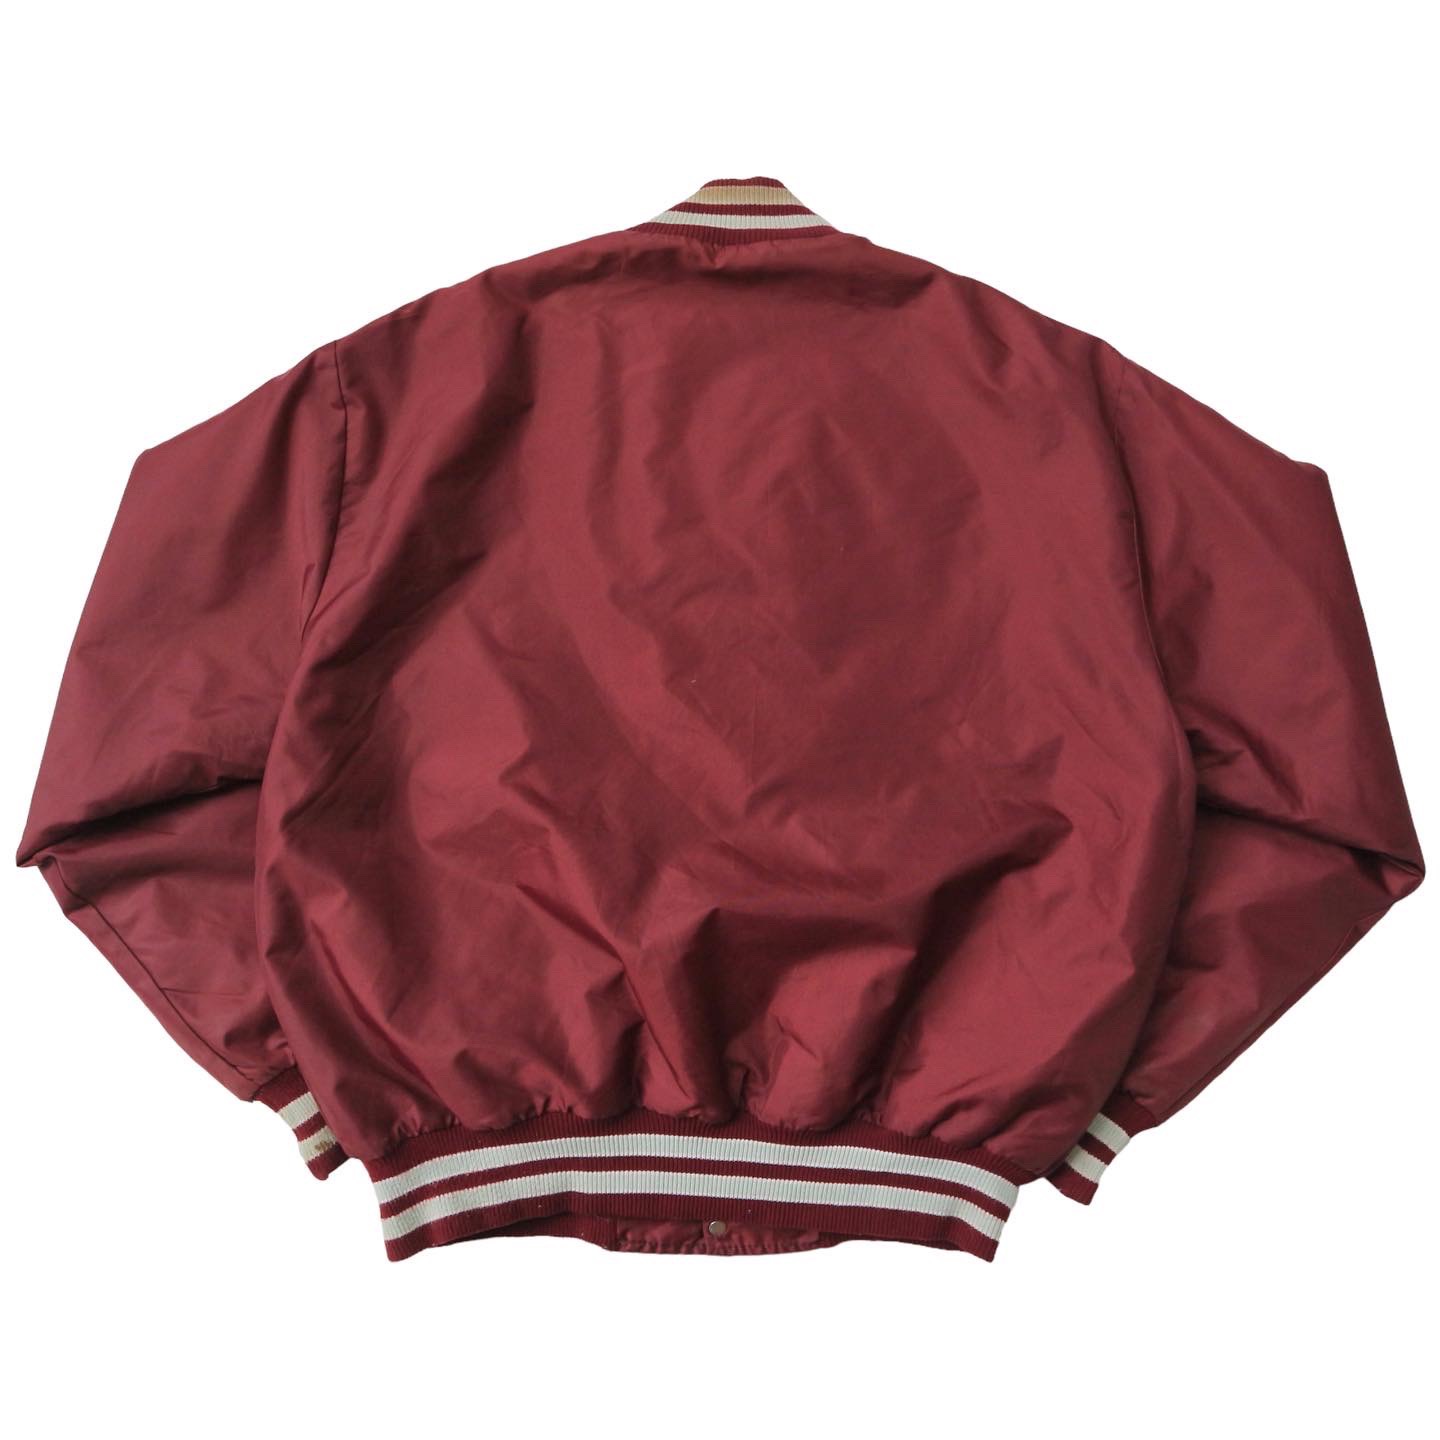 Vintage DeLong Windbreaker Sport Jacket Size L